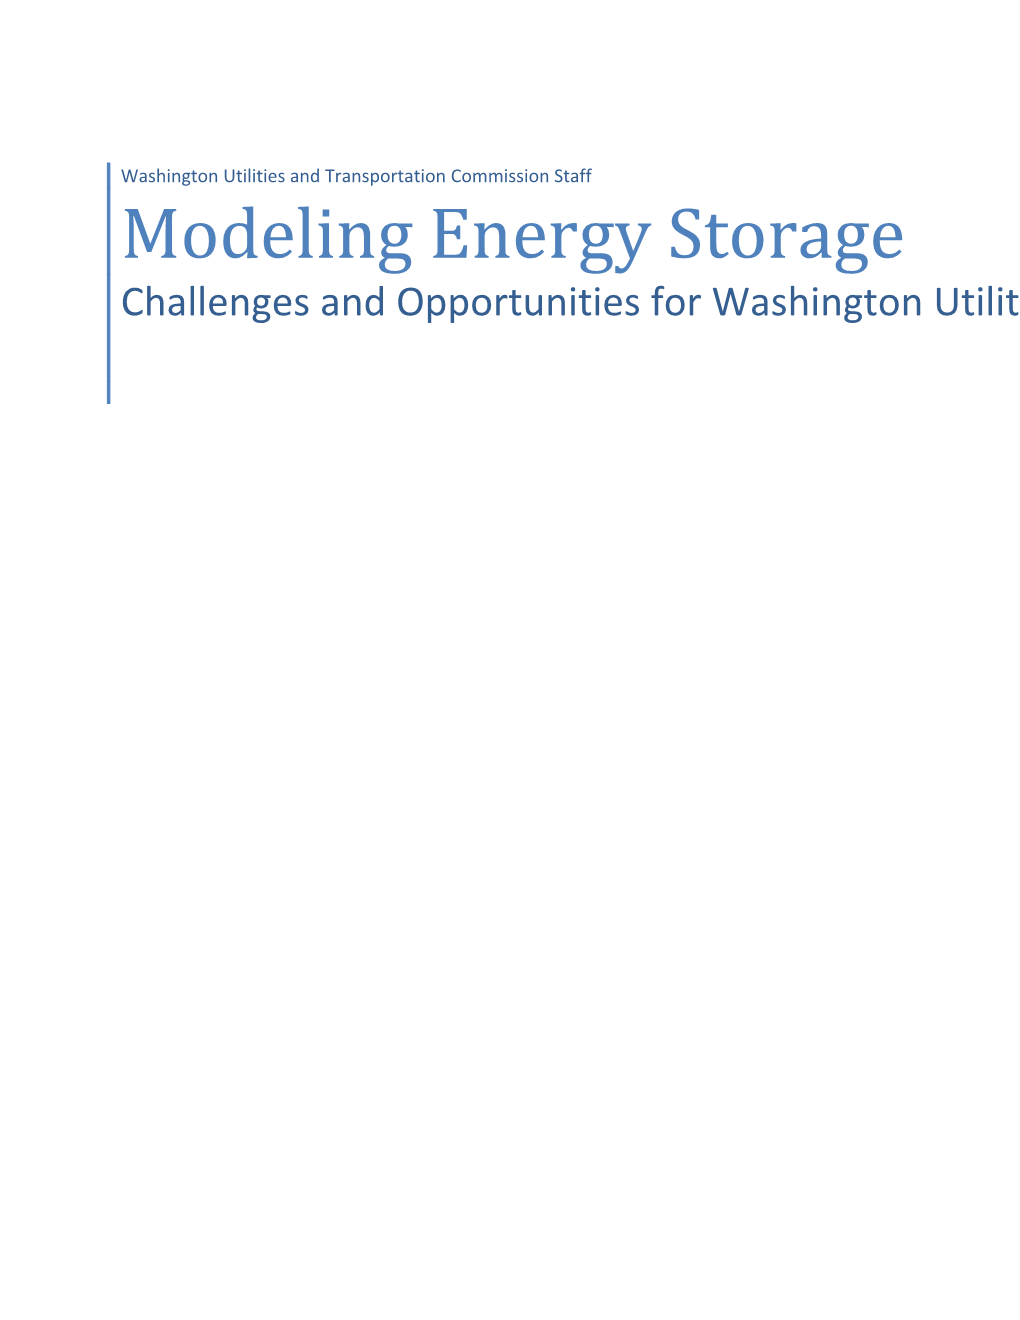 Modeling Energy Storage